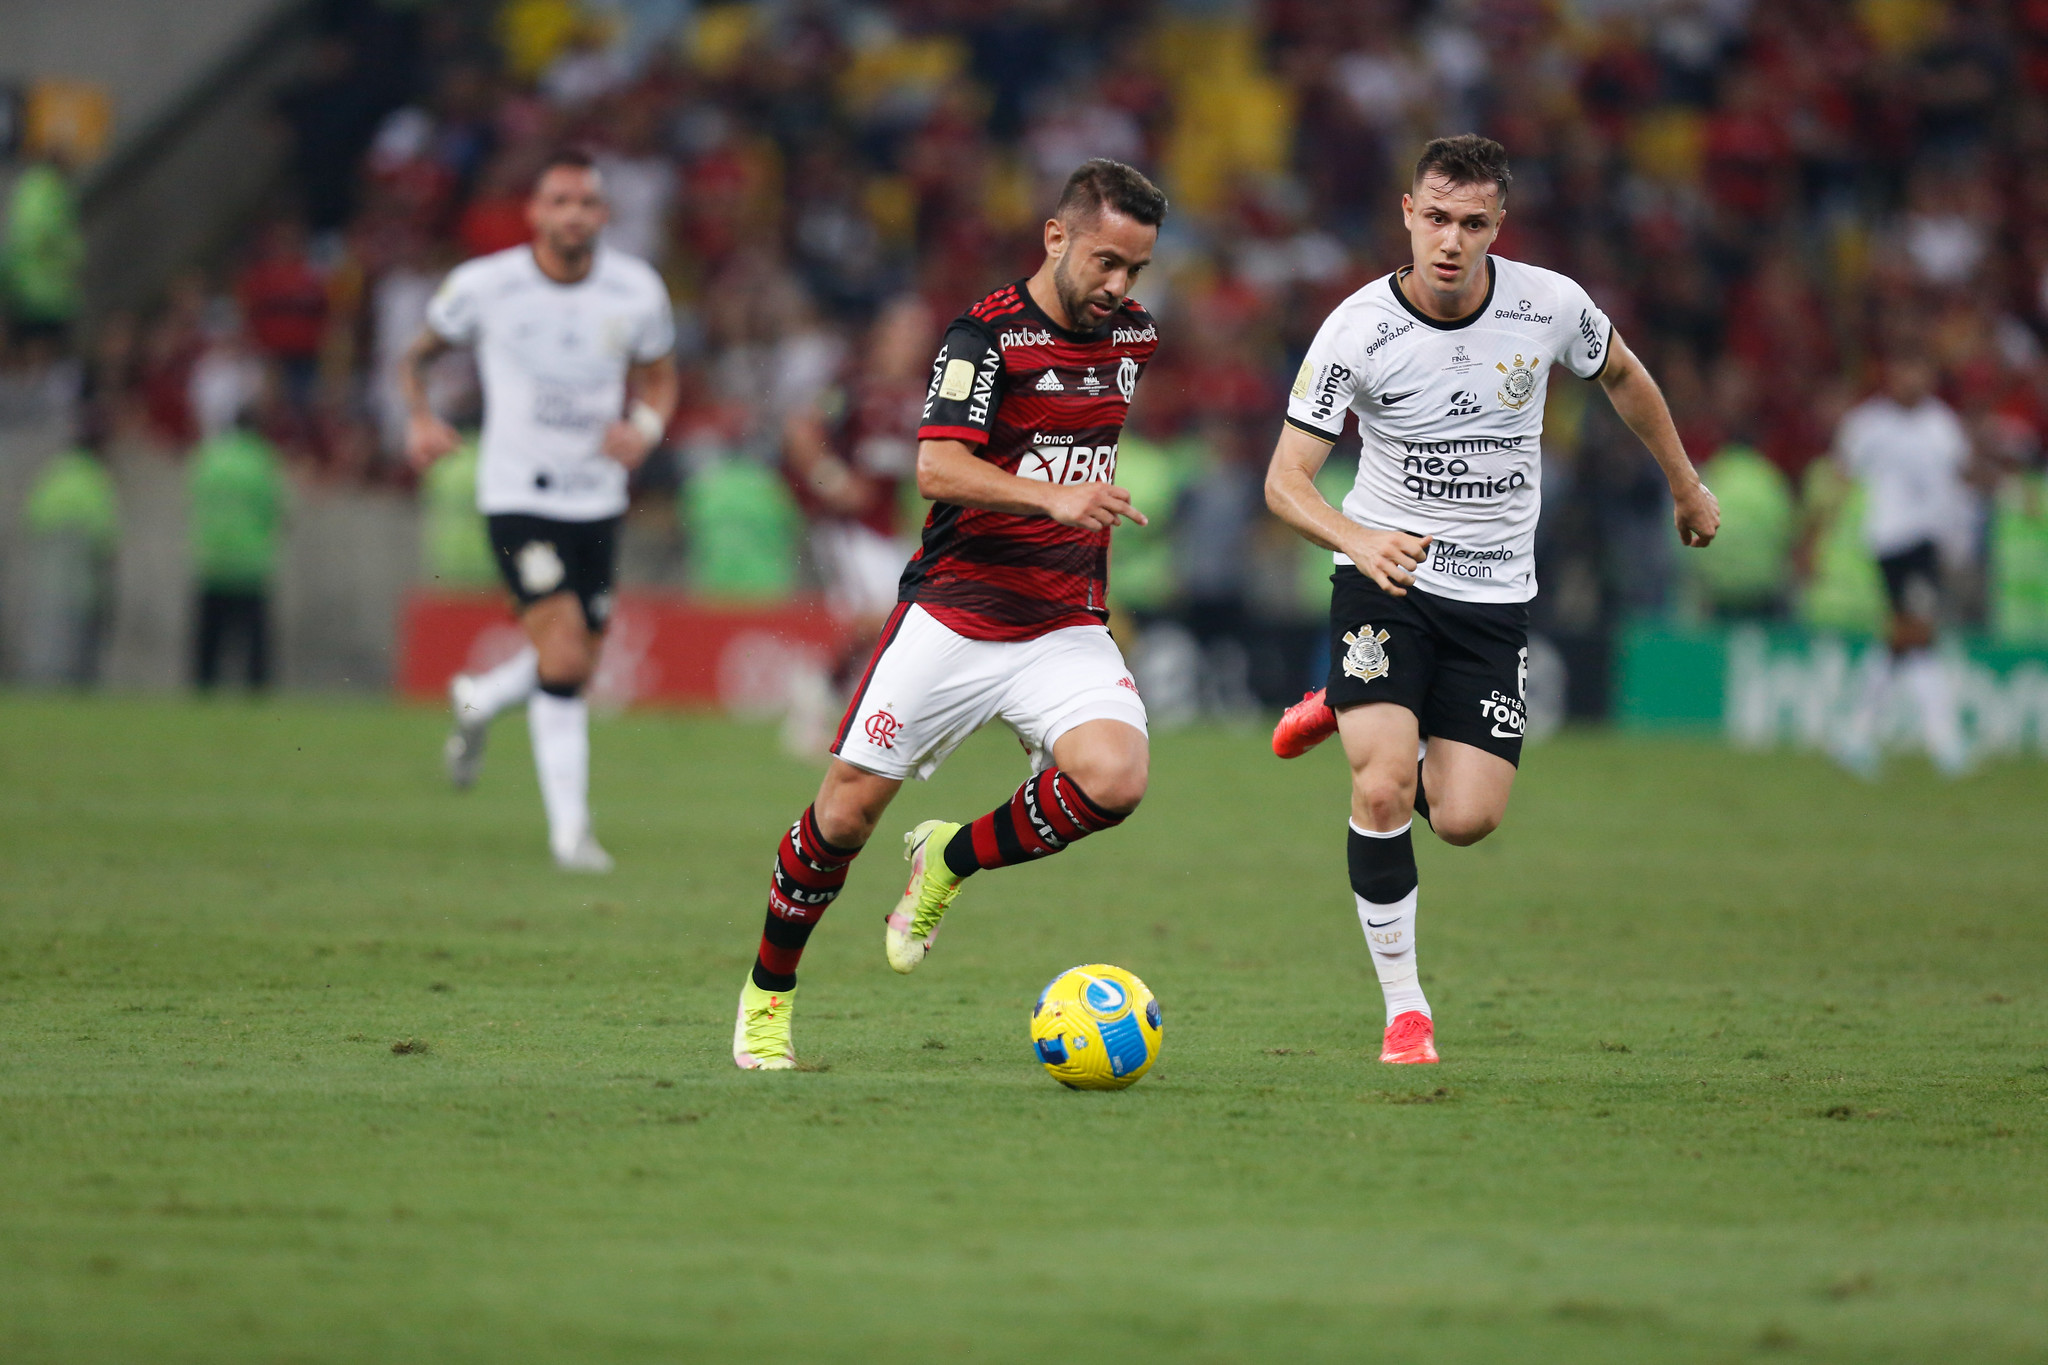 Análise: Queda de rendimento no 2º tempo quase custa caro, mas Flamengo vence a Copa do Brasil